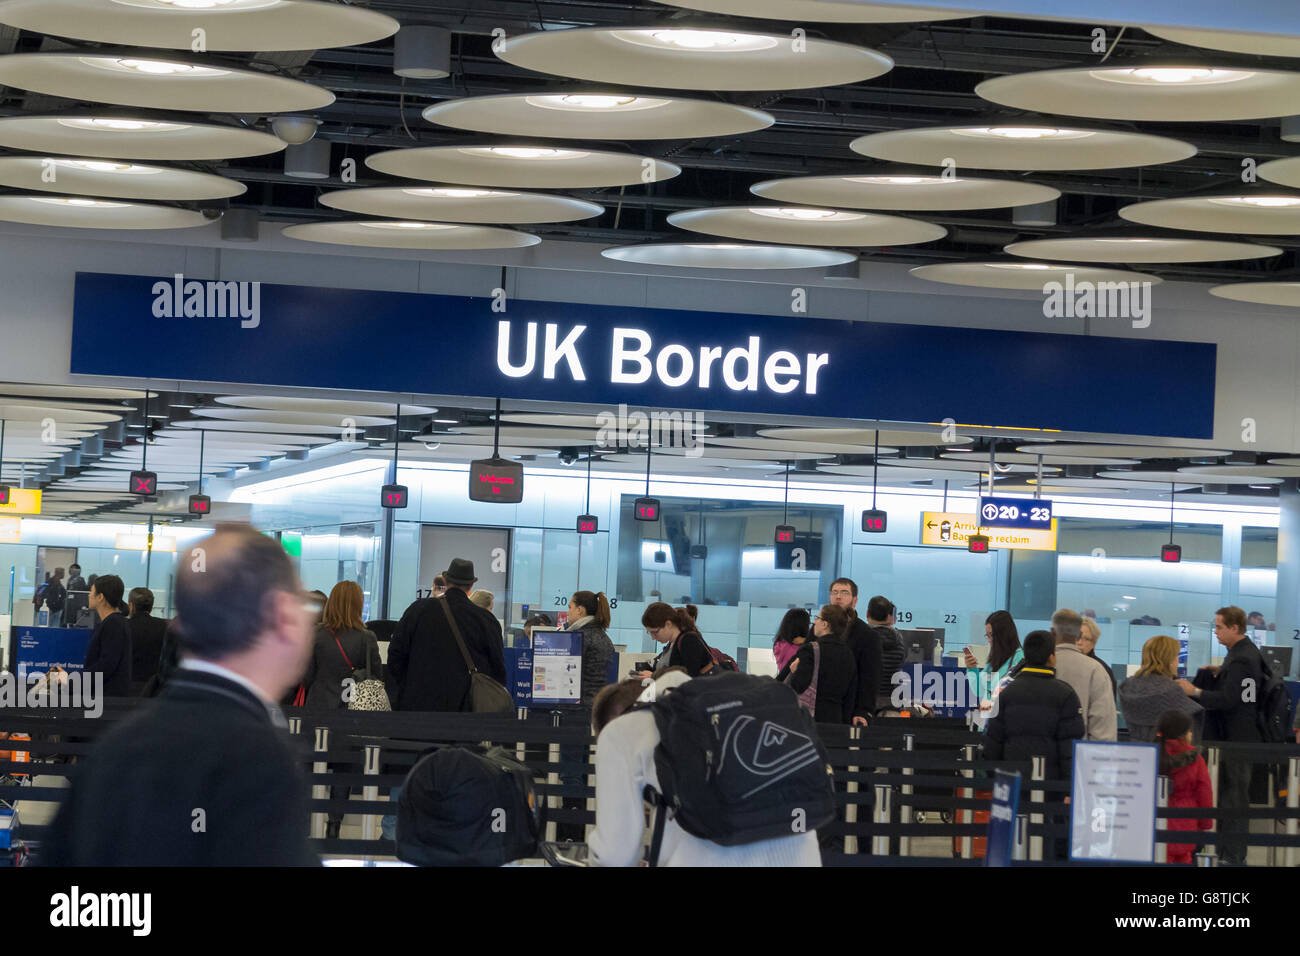 UK Border contrôle des passeports à l'aéroport de Heathrow, Londres, Angleterre Banque D'Images